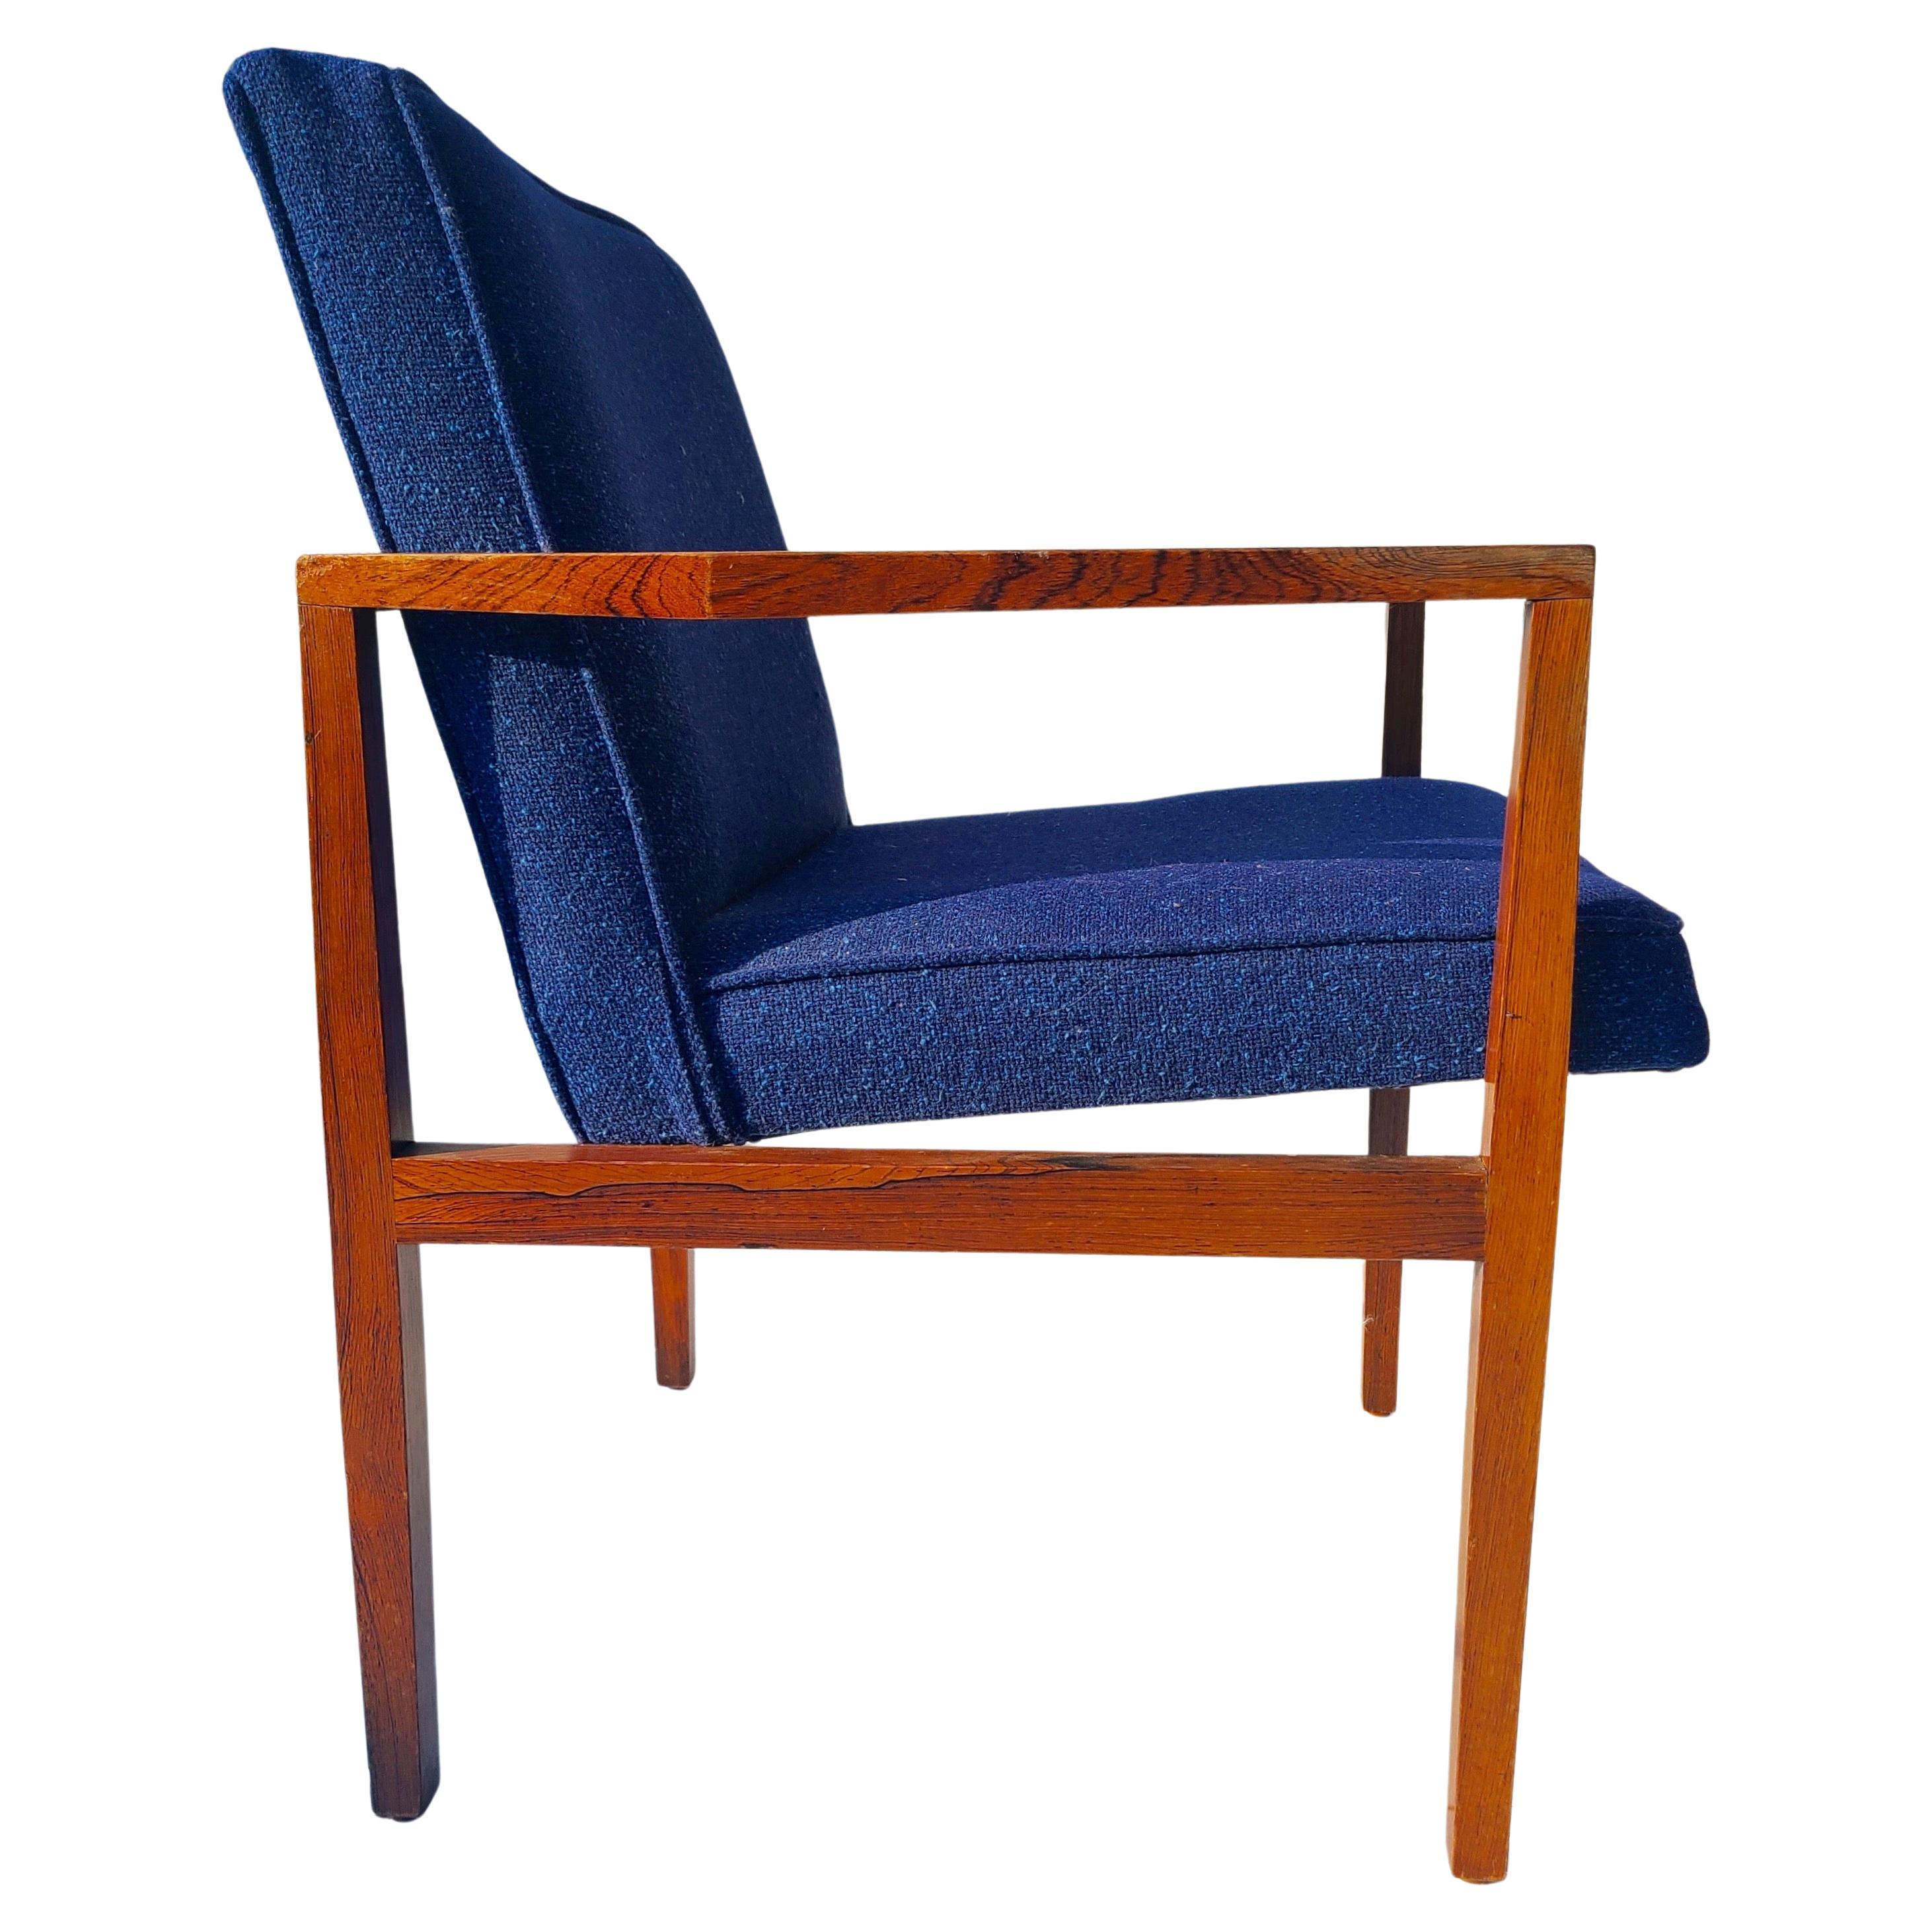 Offener Sessel aus Palisanderholz. Entworfen von Lewis Butler für Knoll.
Unrestauriert.
Kratzer an der Ellbogenstütze der rechten Hand im Sitzen.

 